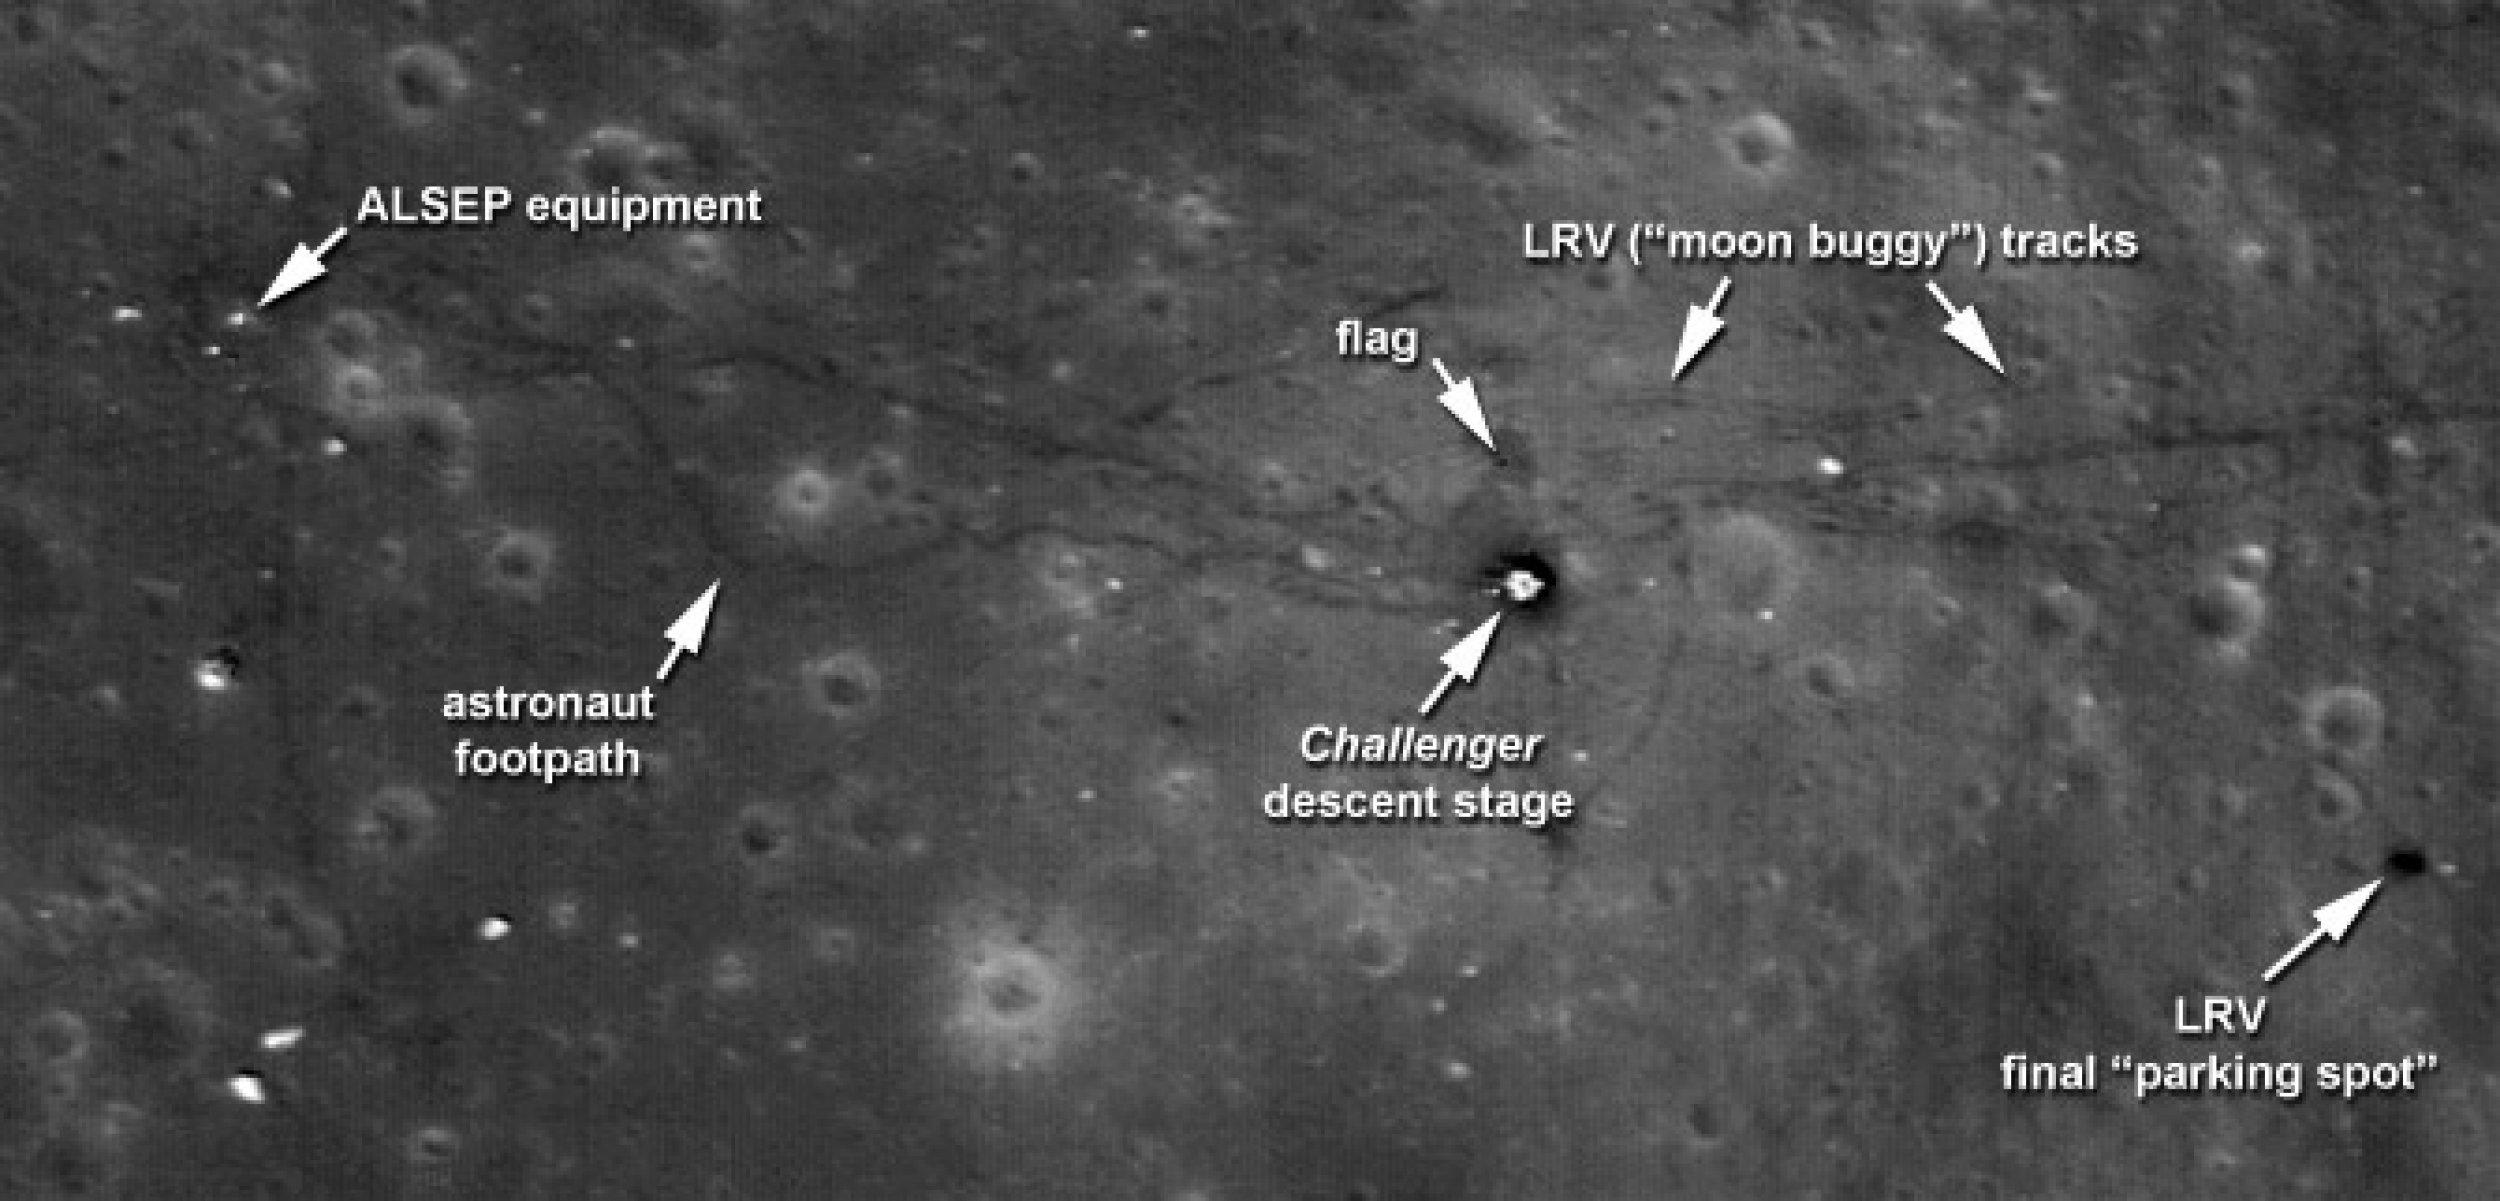 фотографии места высадки американцев на луну